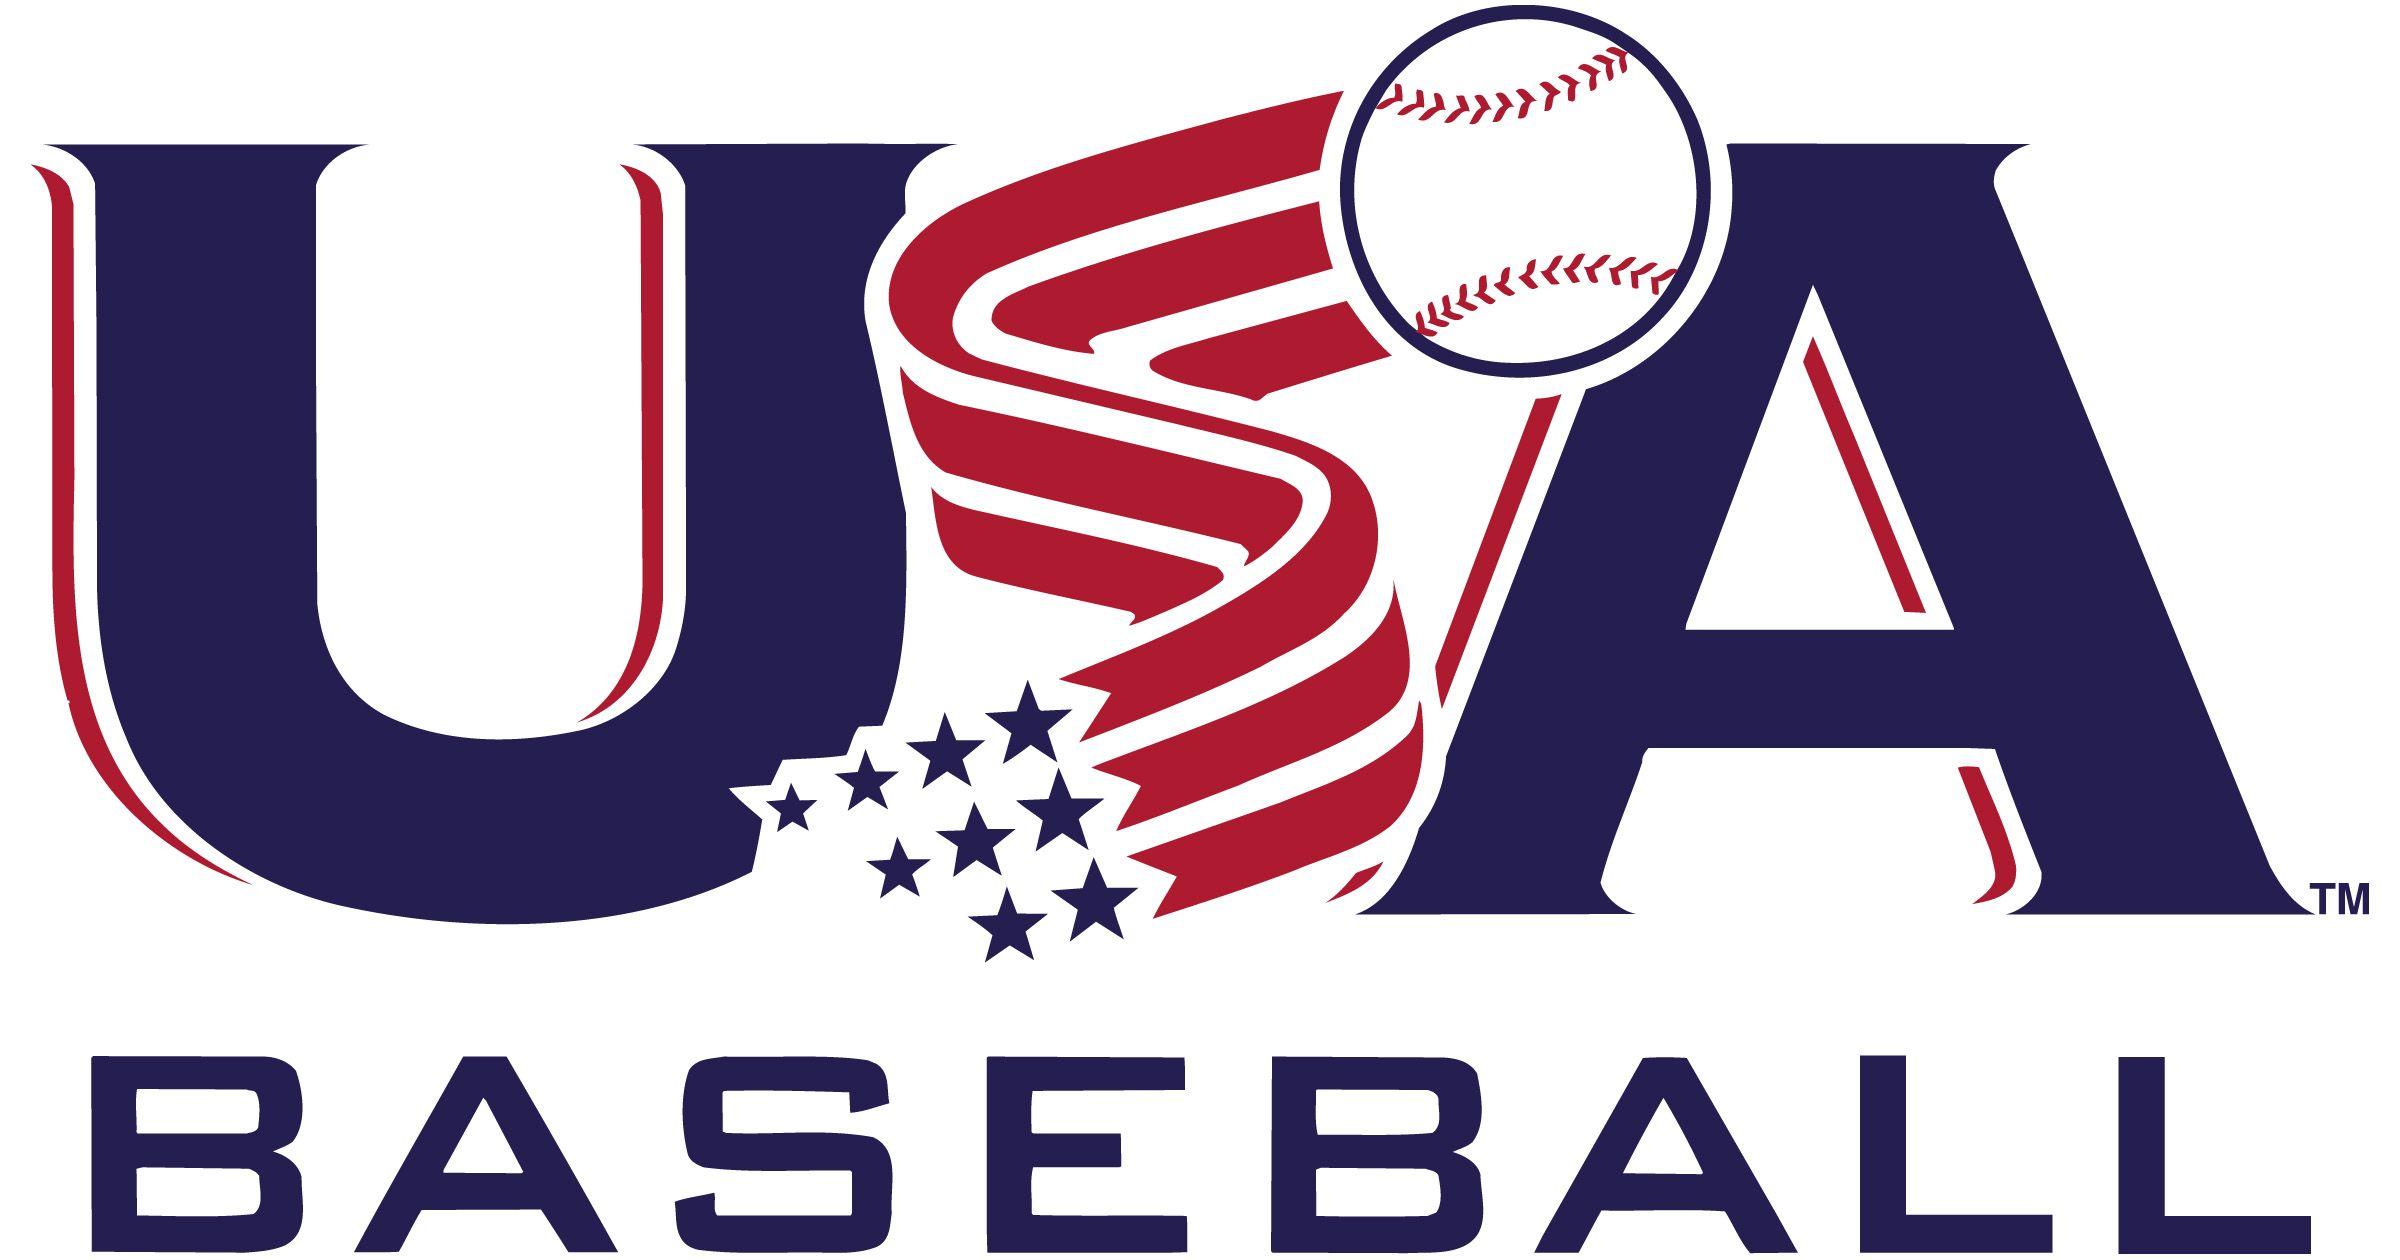 USA Baseball Wallpapers Top Free USA Baseball Backgrounds